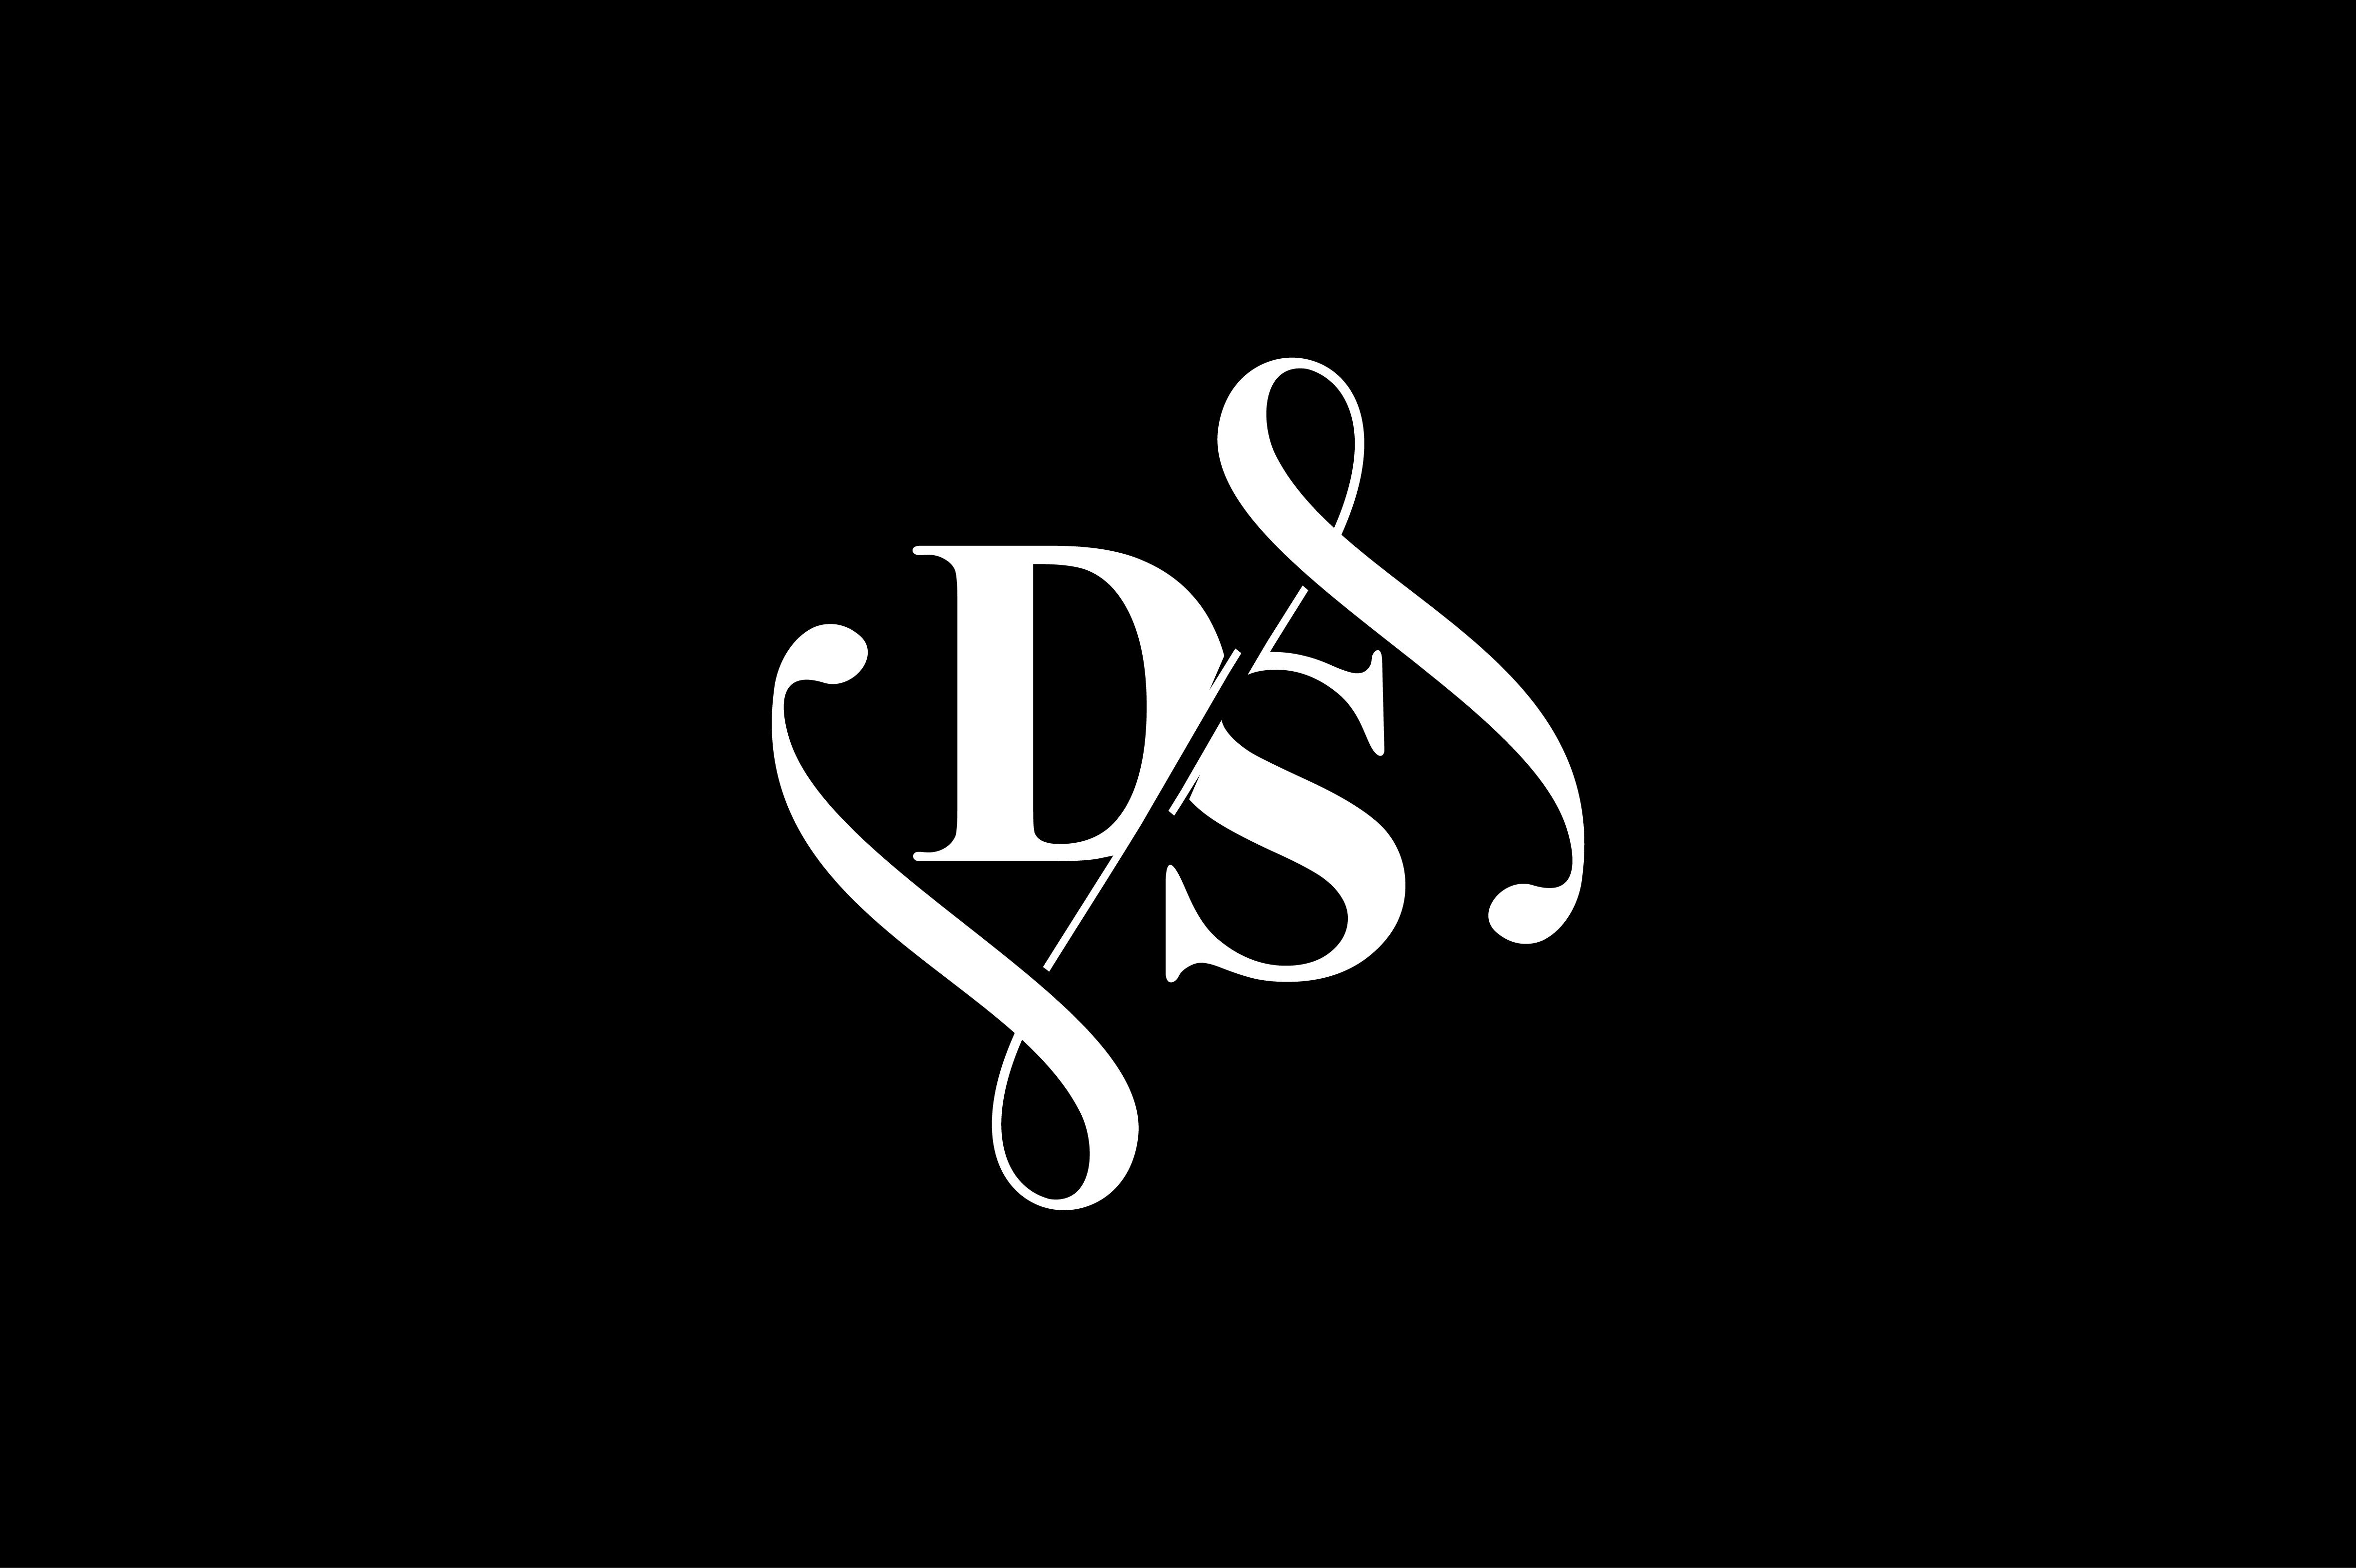 DS Monogram logo Design V6 By Vectorseller